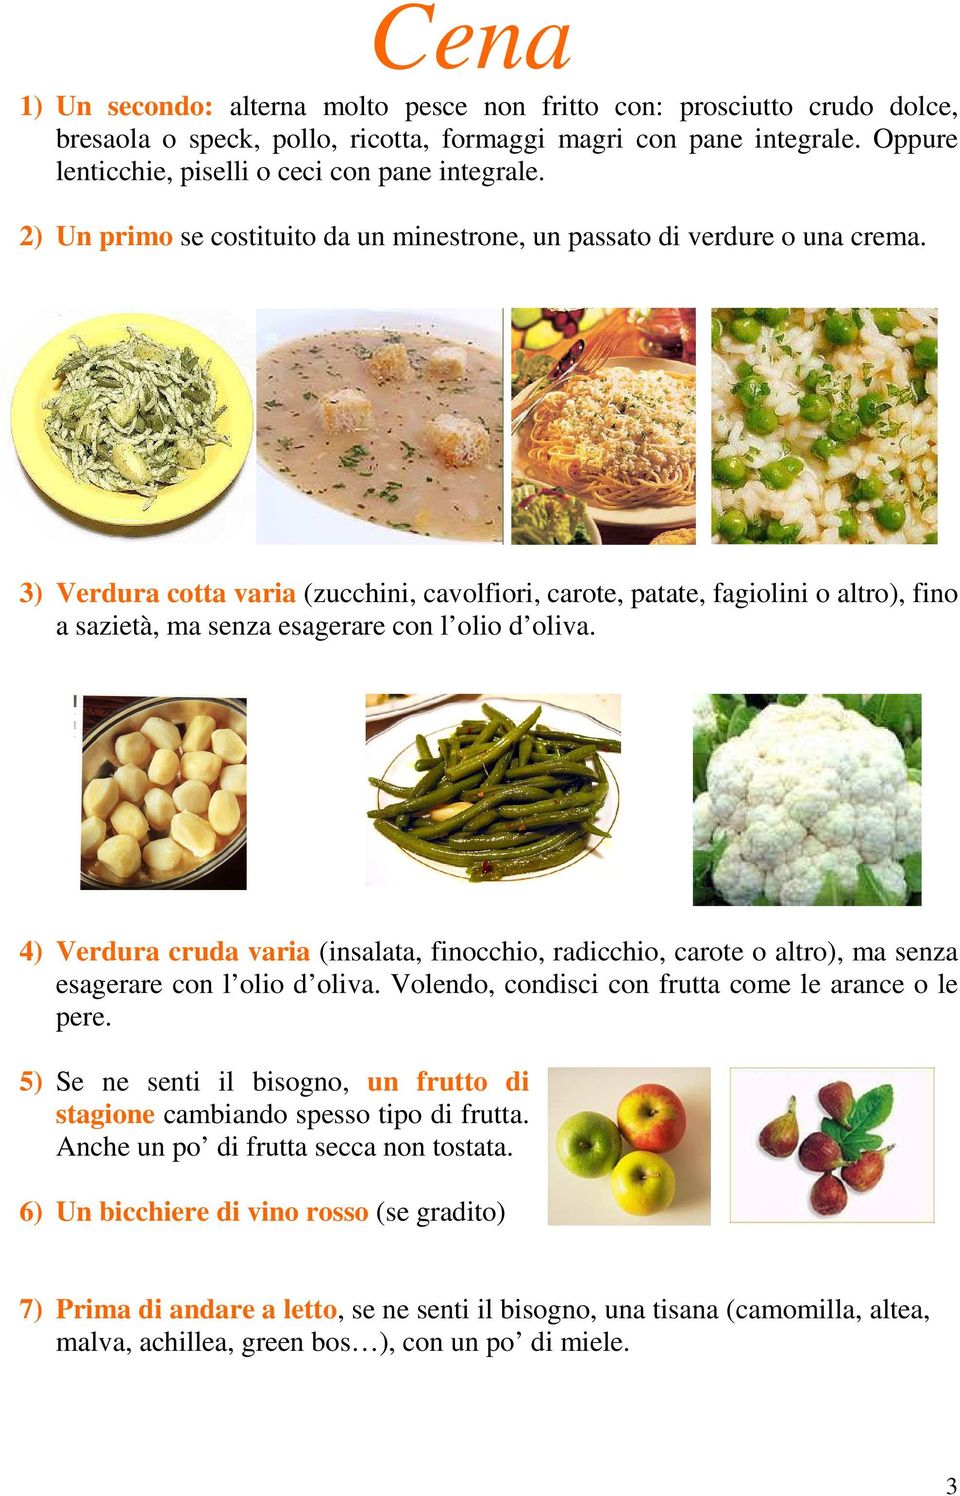 3) Verdura cotta varia (zucchini, cavolfiori, carote, patate, fagiolini o altro), fino a sazietà, ma senza esagerare con l olio d oliva.